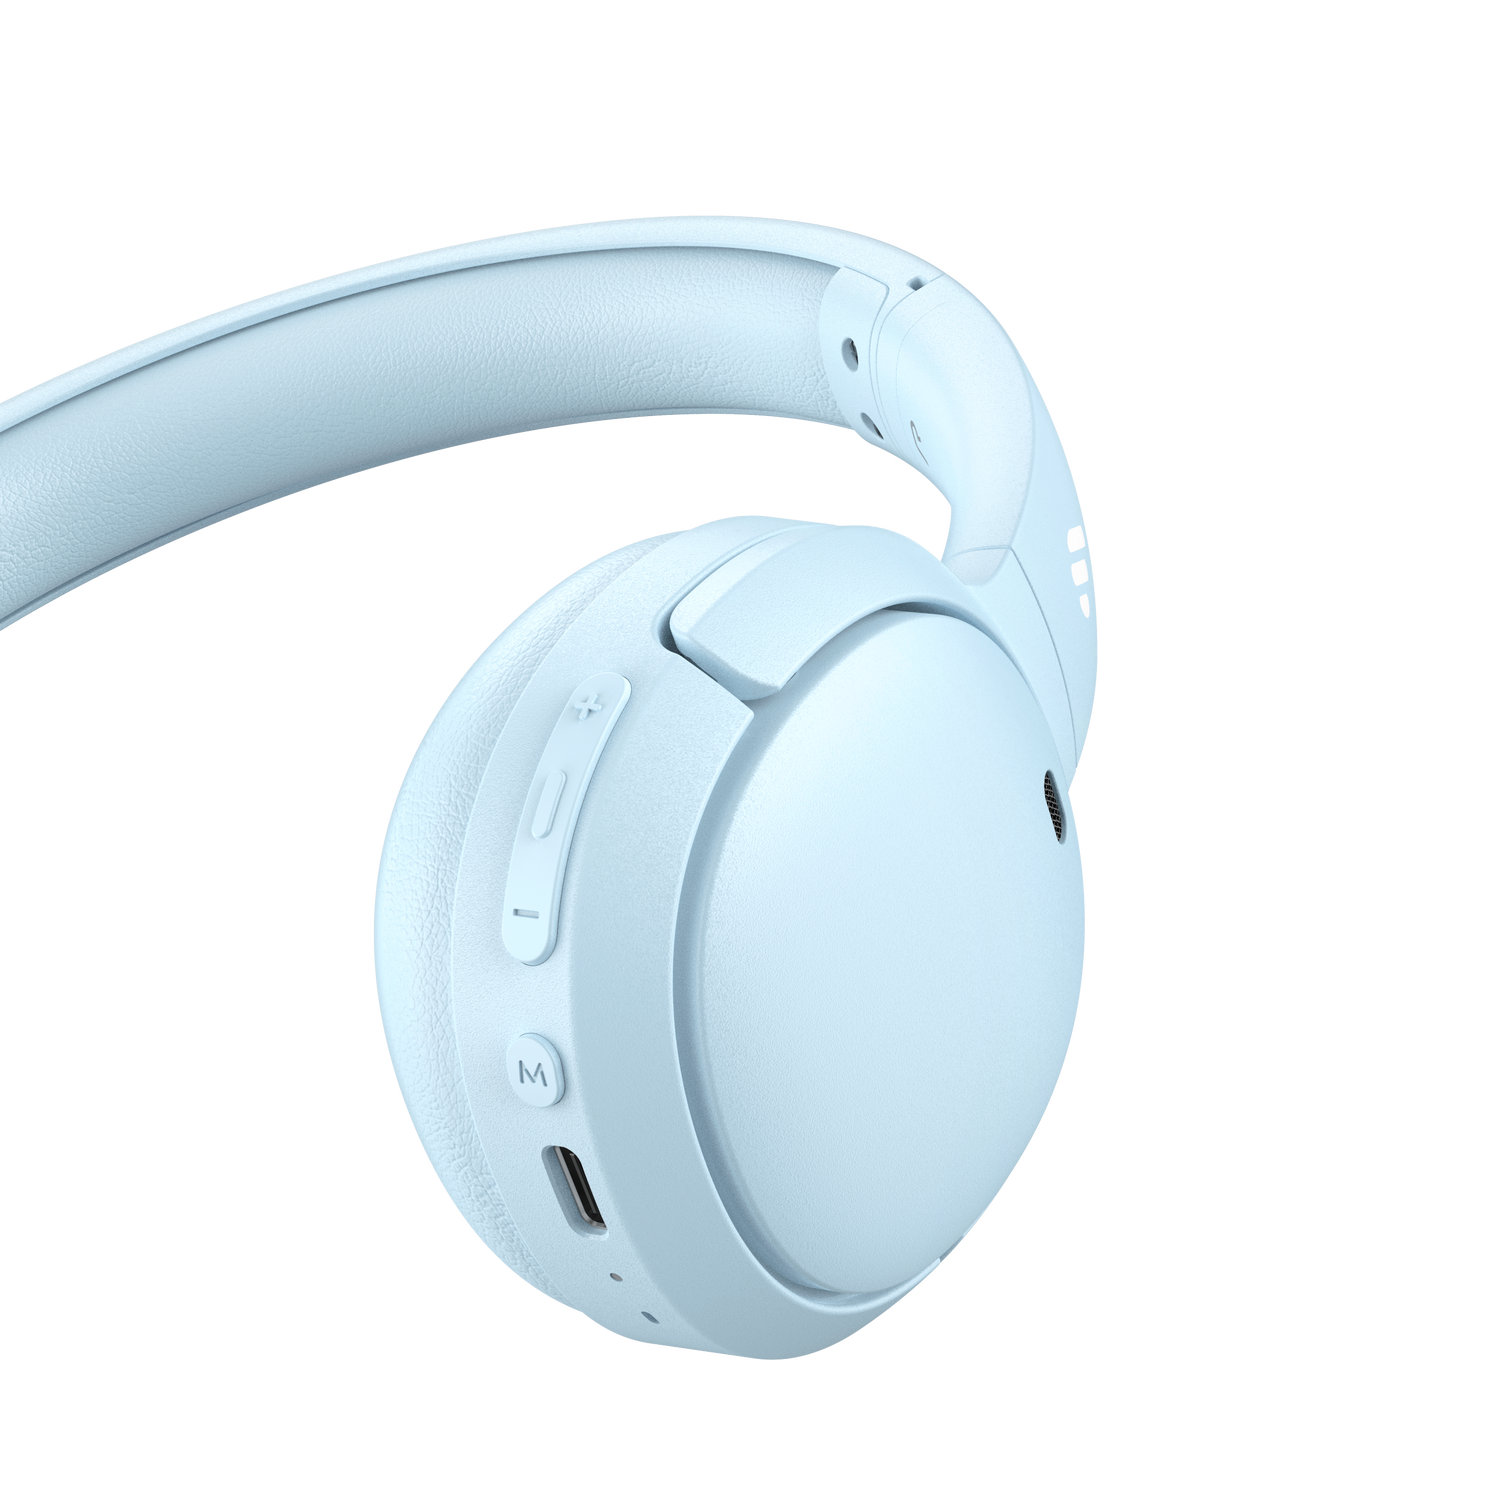 WH500 Wireless On-Ear Headphones